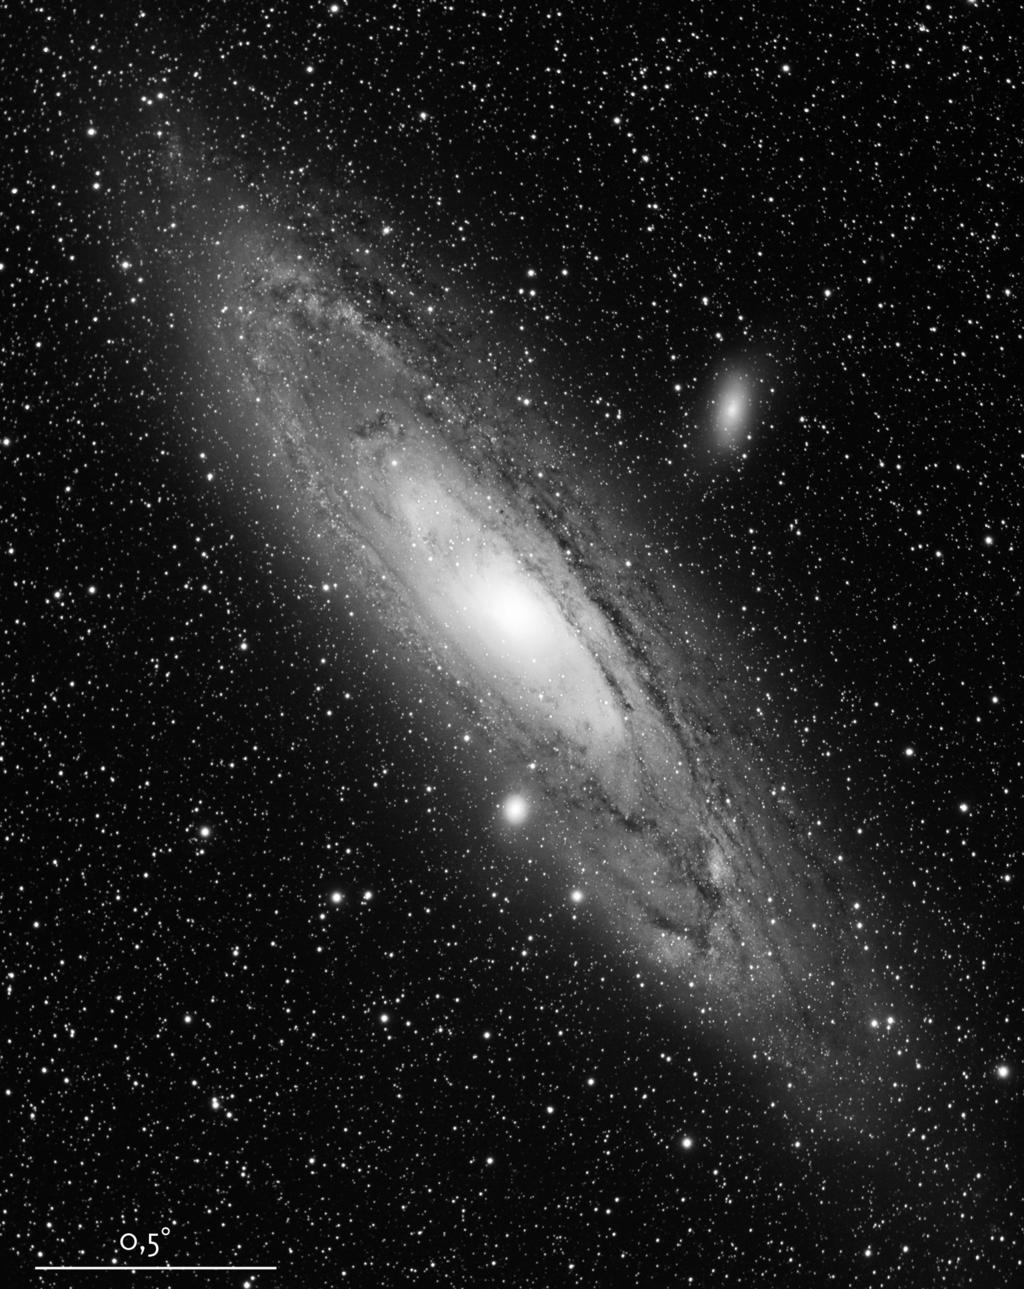 Andromeda poznavanje absorpcije svetlobe v medzvezdnih prostranstvih na[e Galaksije so pokazali, da je galaksija kar 2,2 milijona svetlobnih let oddaljena od nas.